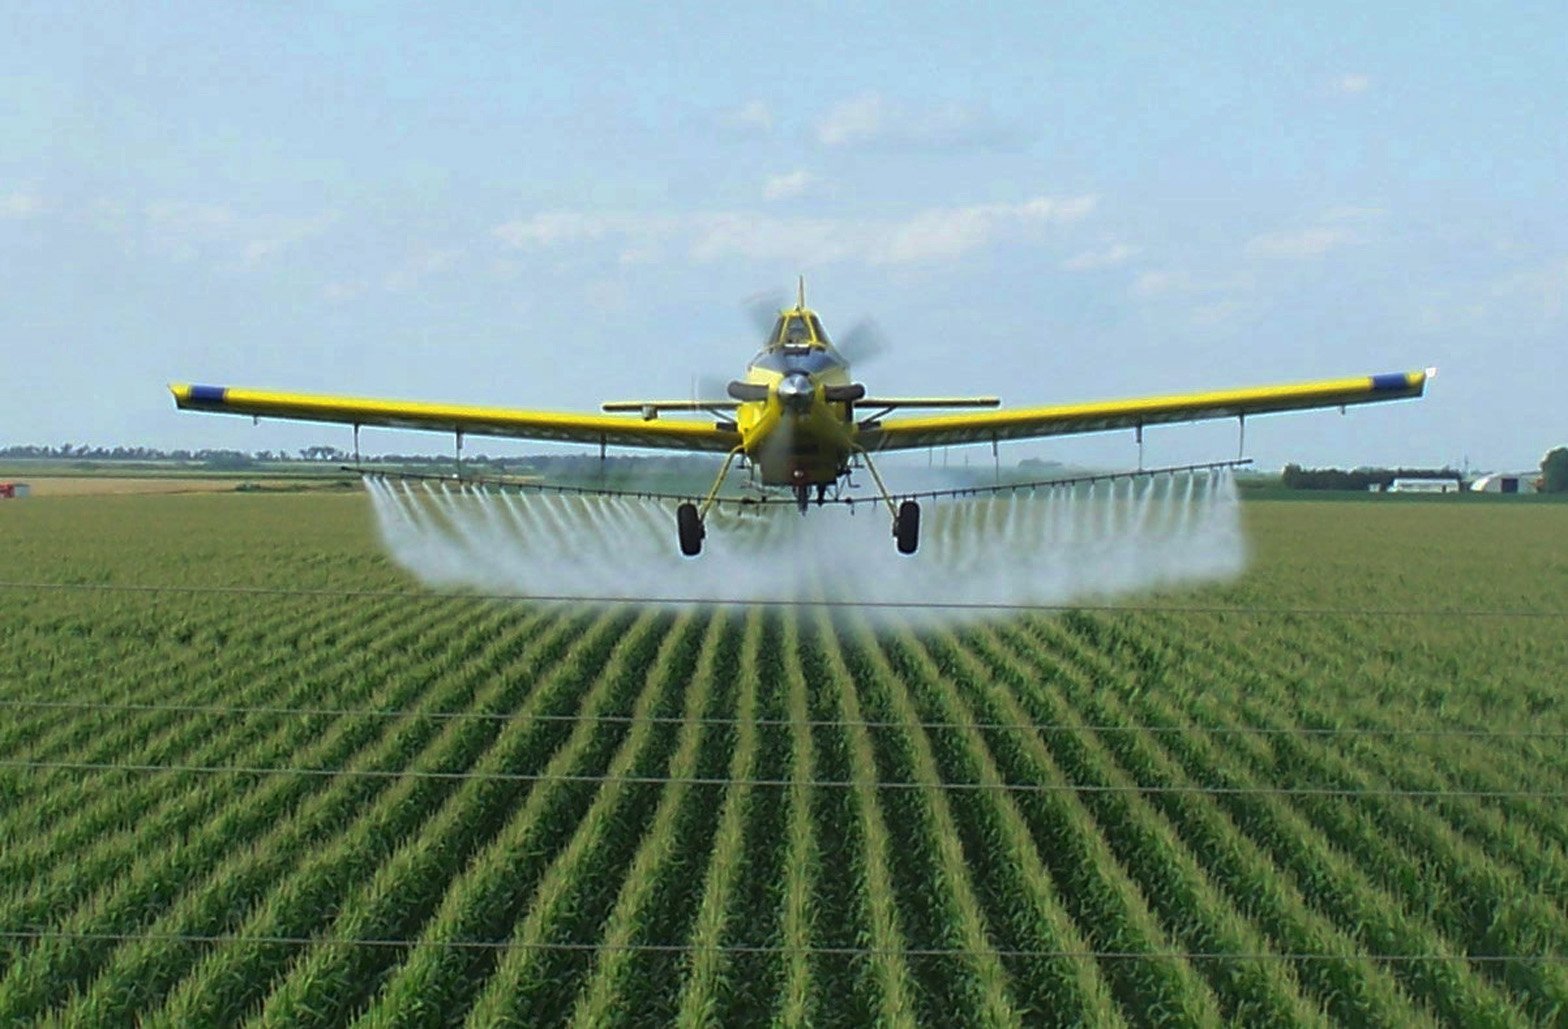 Обработка полей пестицидами. Сельскохозяйственный самолет. Пестициды. Авиация в сельском хозяйстве. Пестициды в сельском хозяйстве.